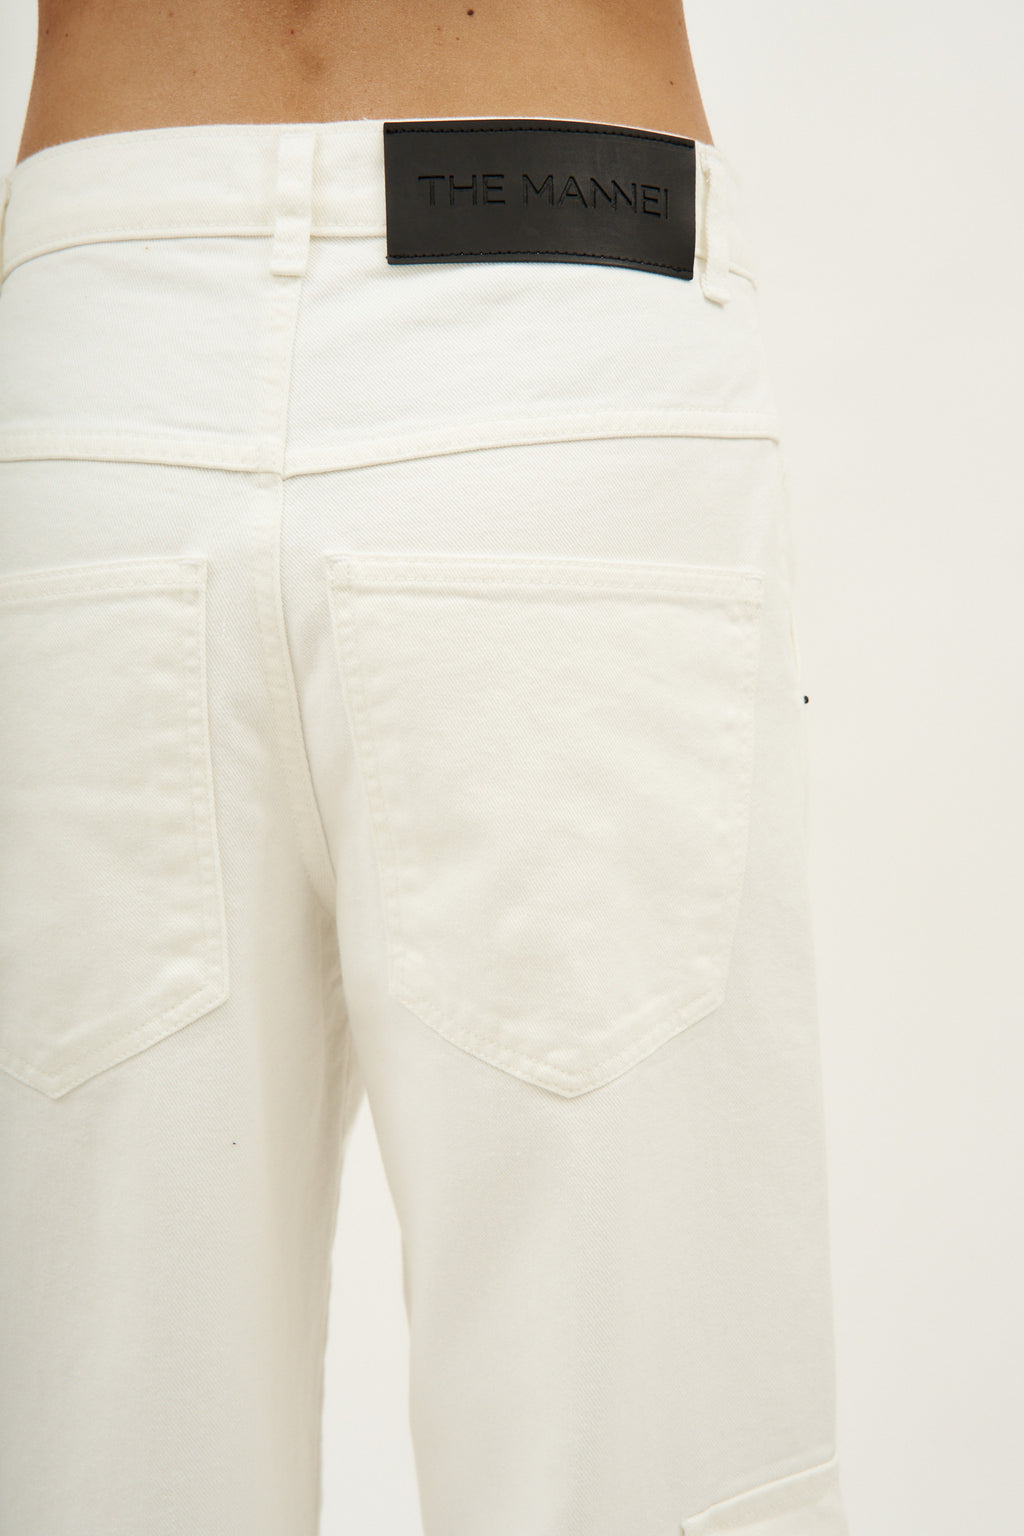 Melas White Pants